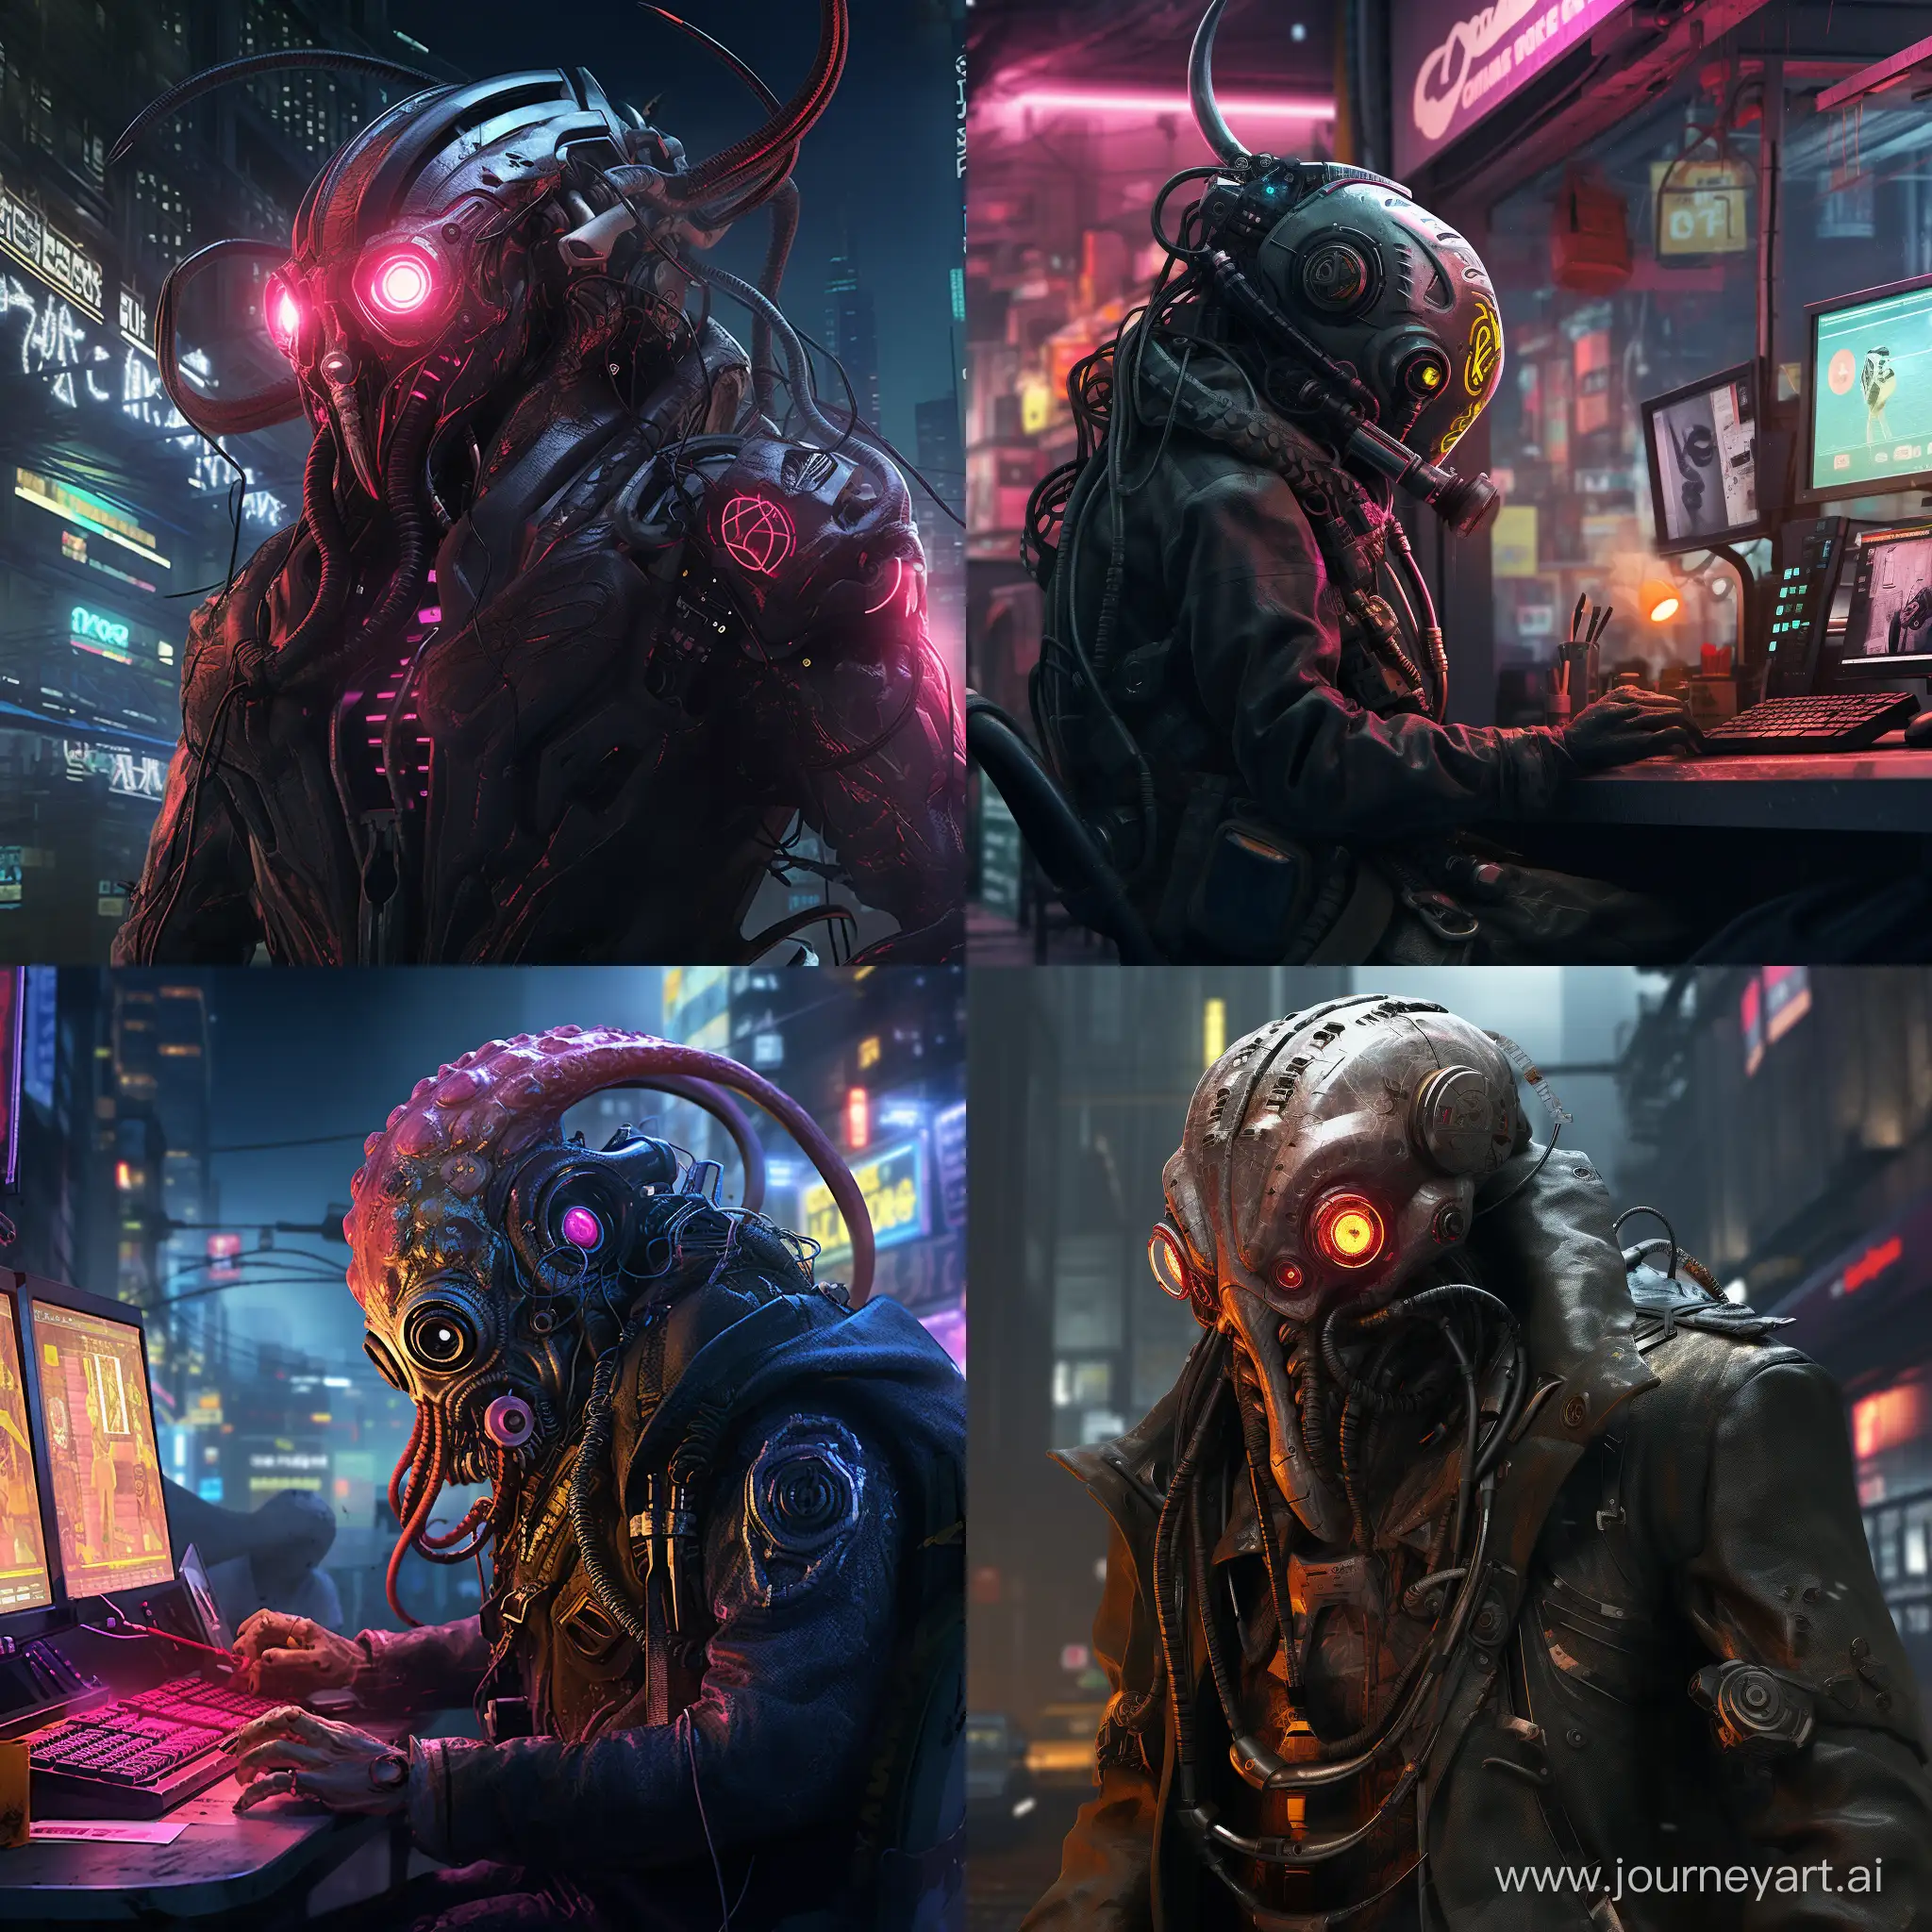 Futuristic-Cyberpunk-Octopus-in-Urban-Setting